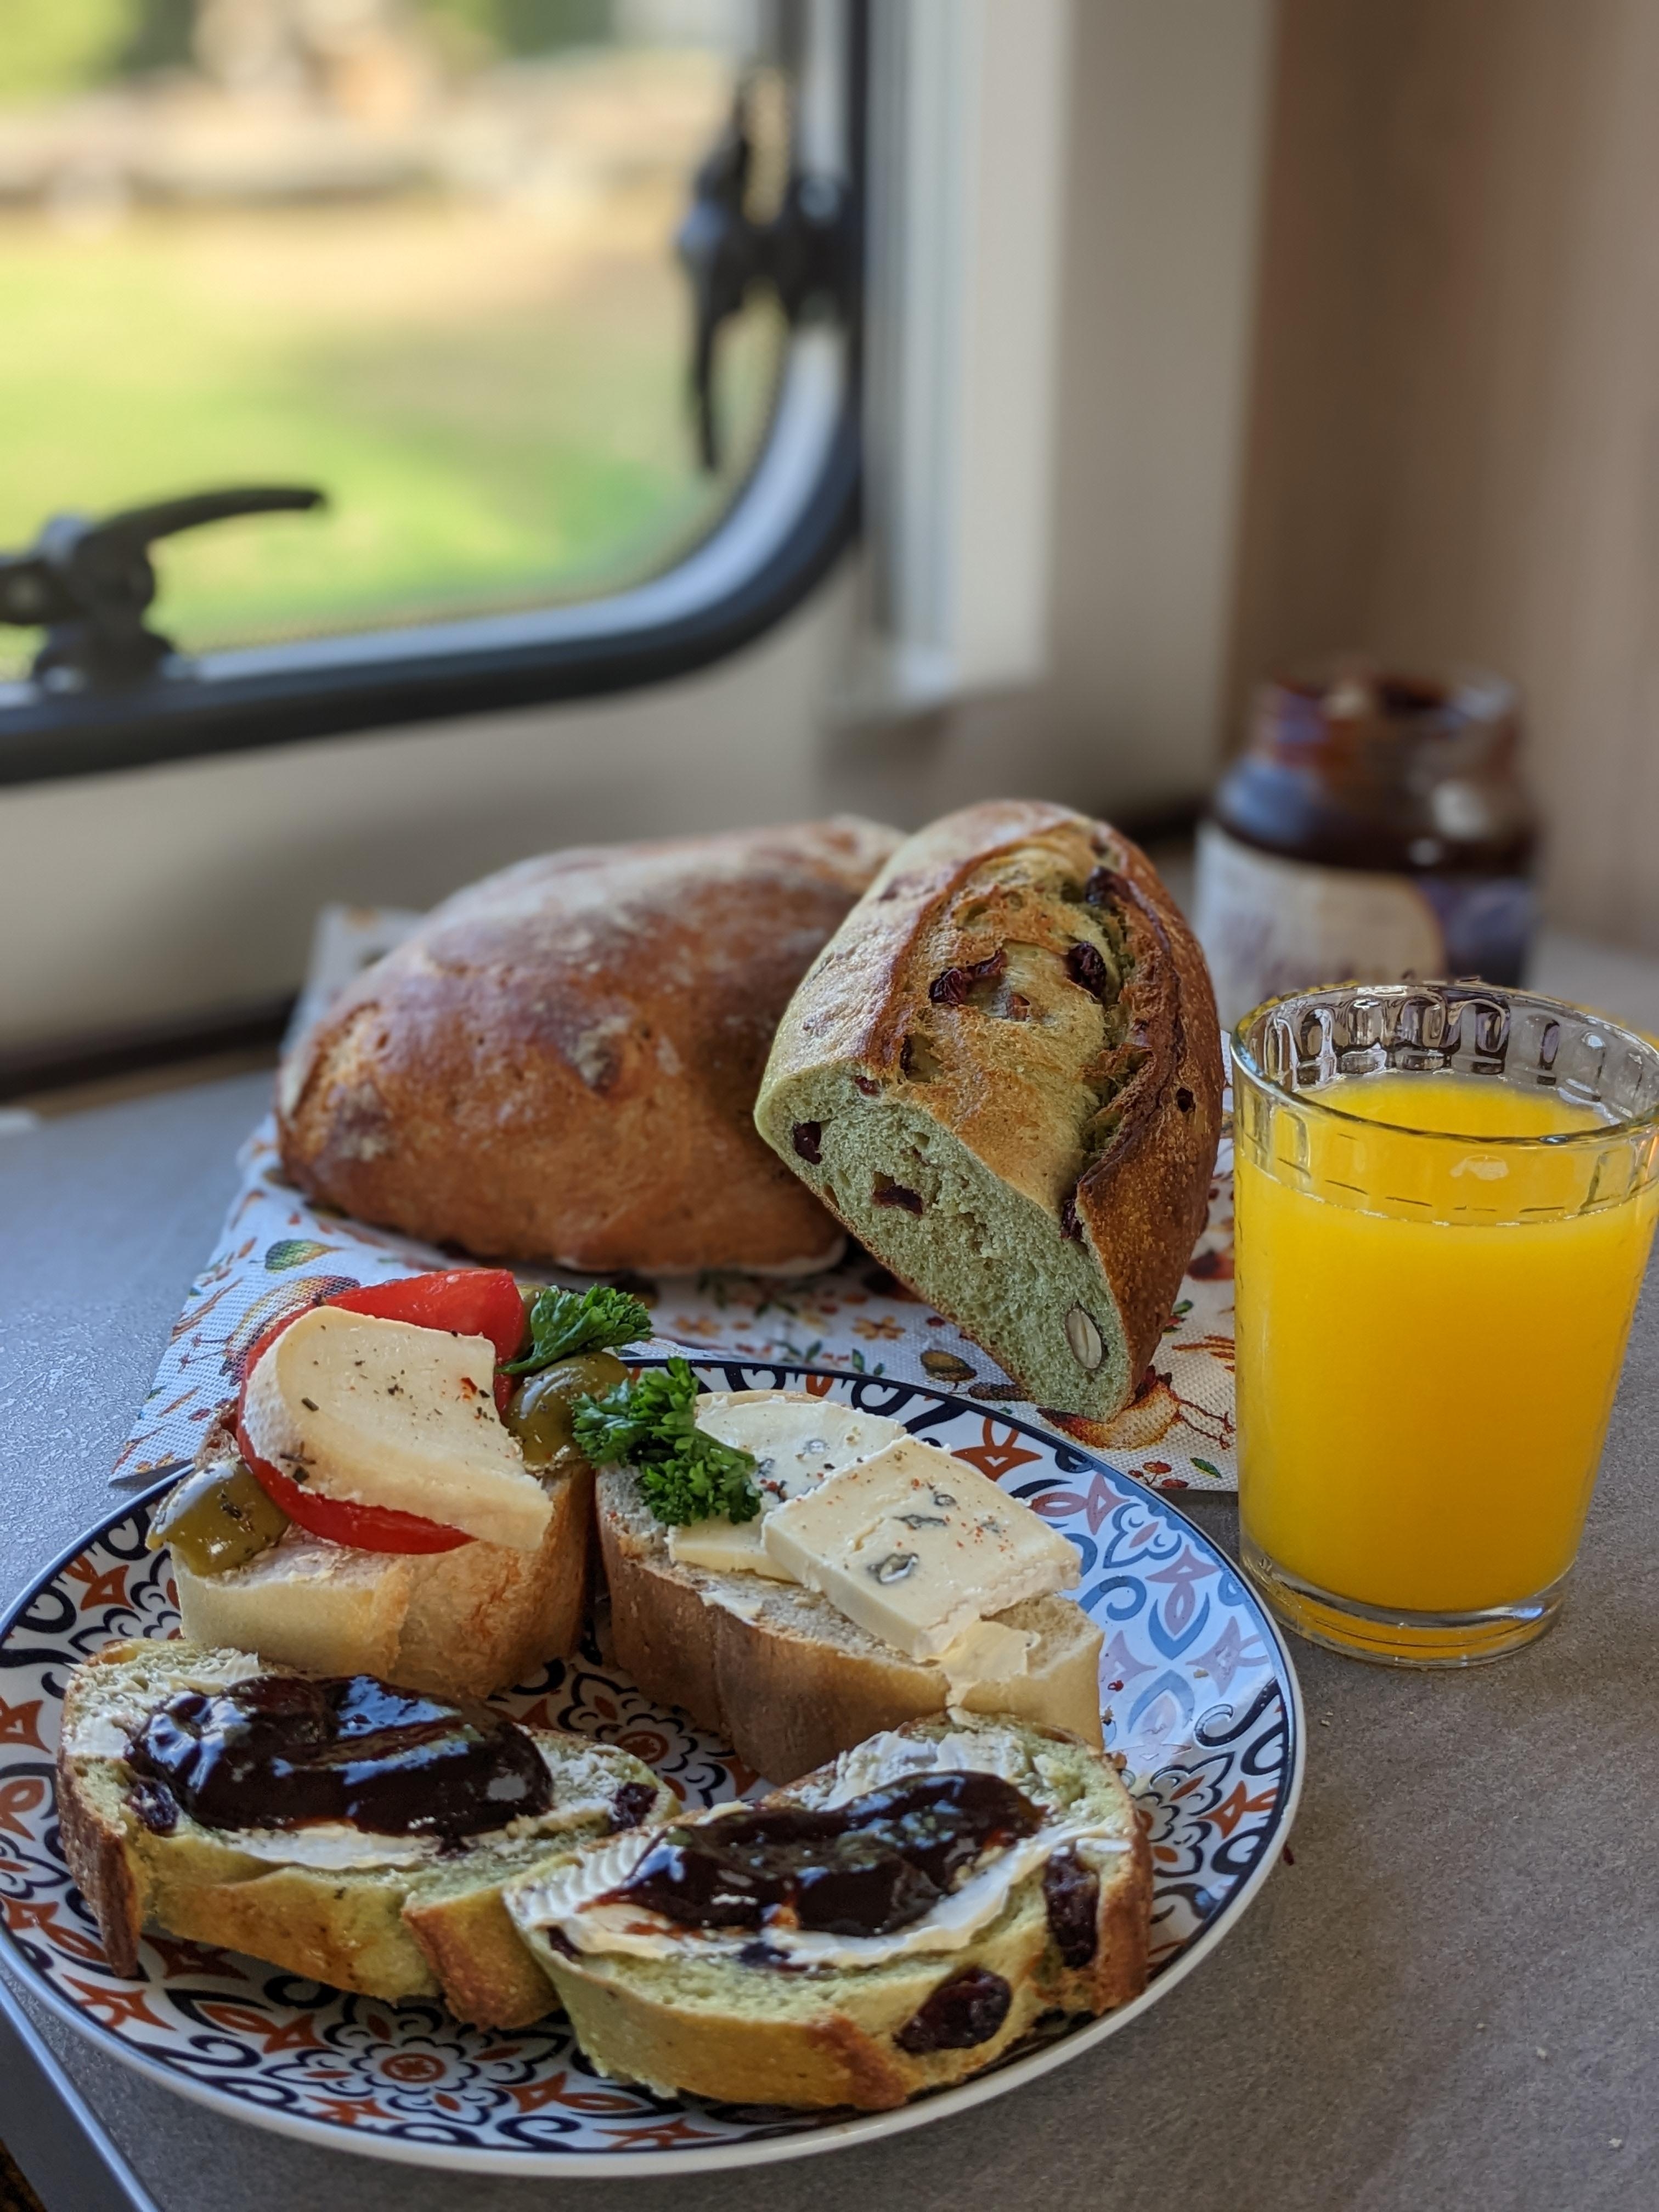 Das simple Leben. Frühstück im Wohnmobil.☕🏕️
#vanlife #camping #van #wohnmobil #frühstück